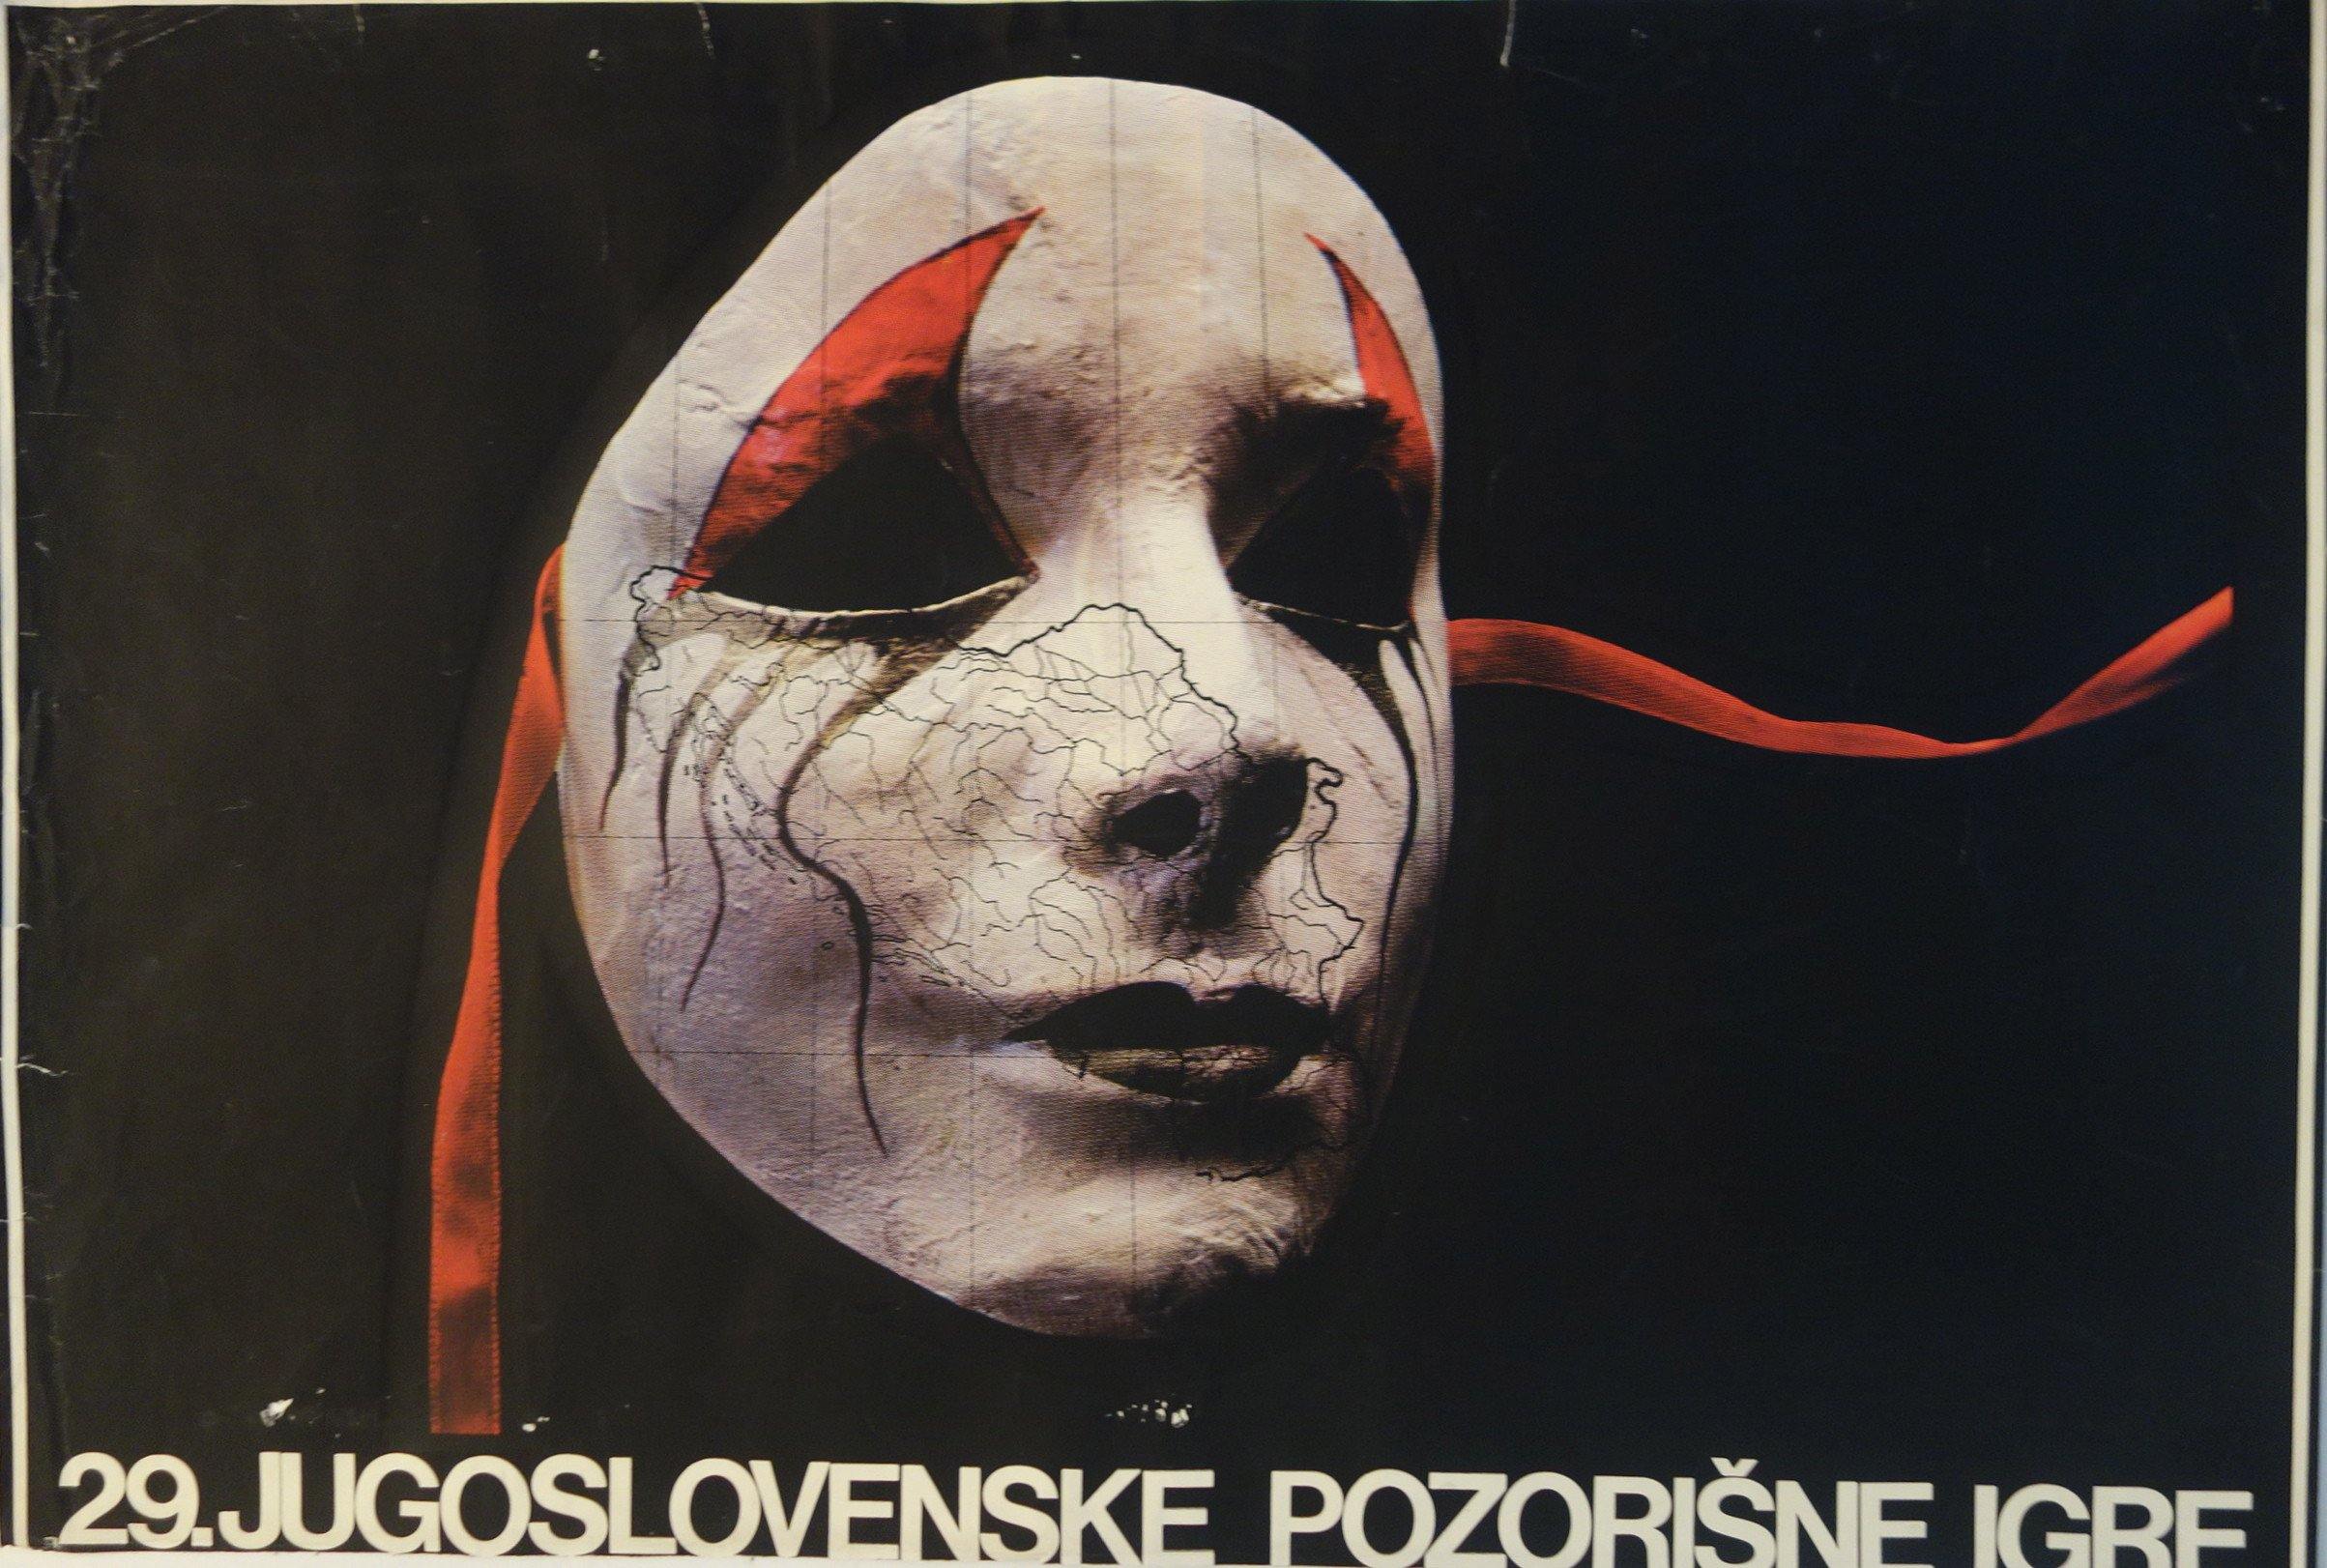 29. Jugoslovenske Pozorisne Igrf - Poster Museum